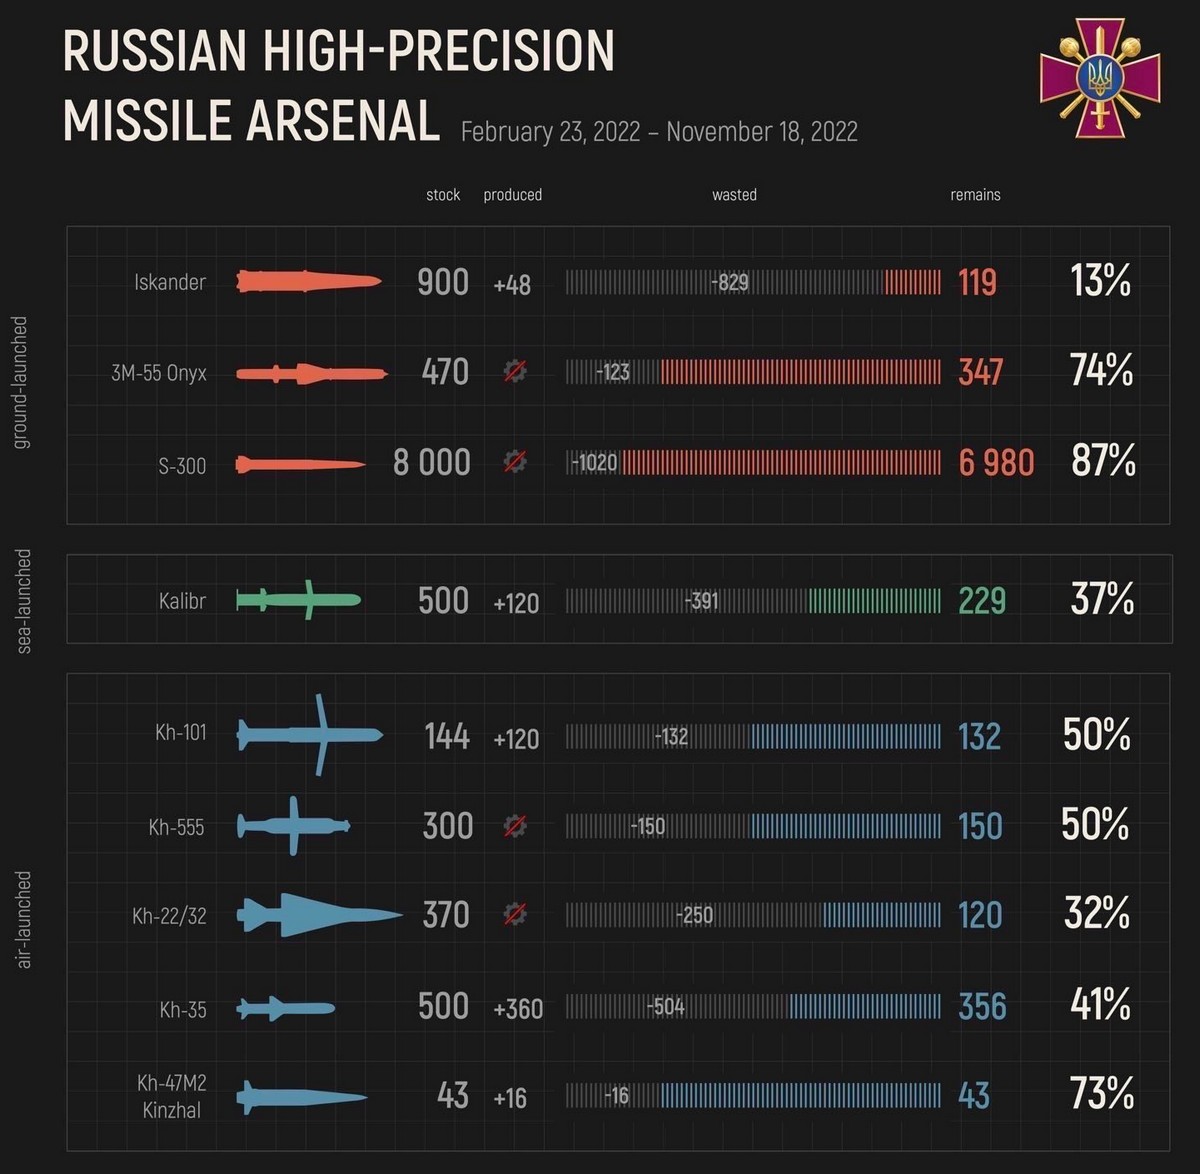 Скільки ракет залишилось у Росії?